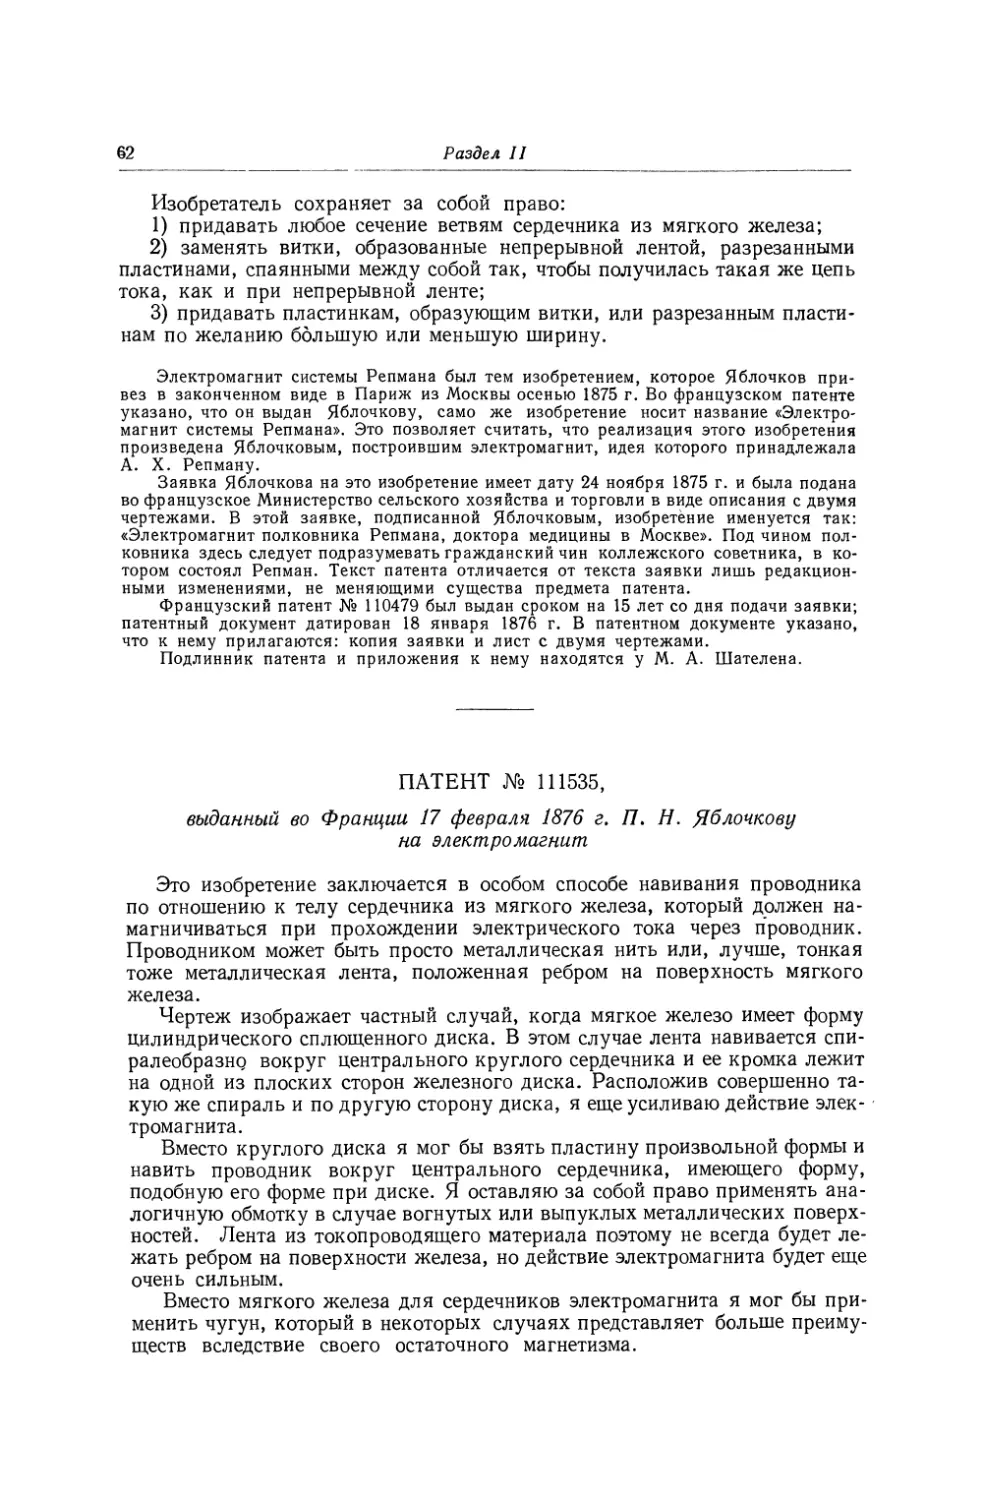 Патент № 111535, выданный во Франции 17 февраля 1876 г. П. Н. Яблочкову на электромагнит